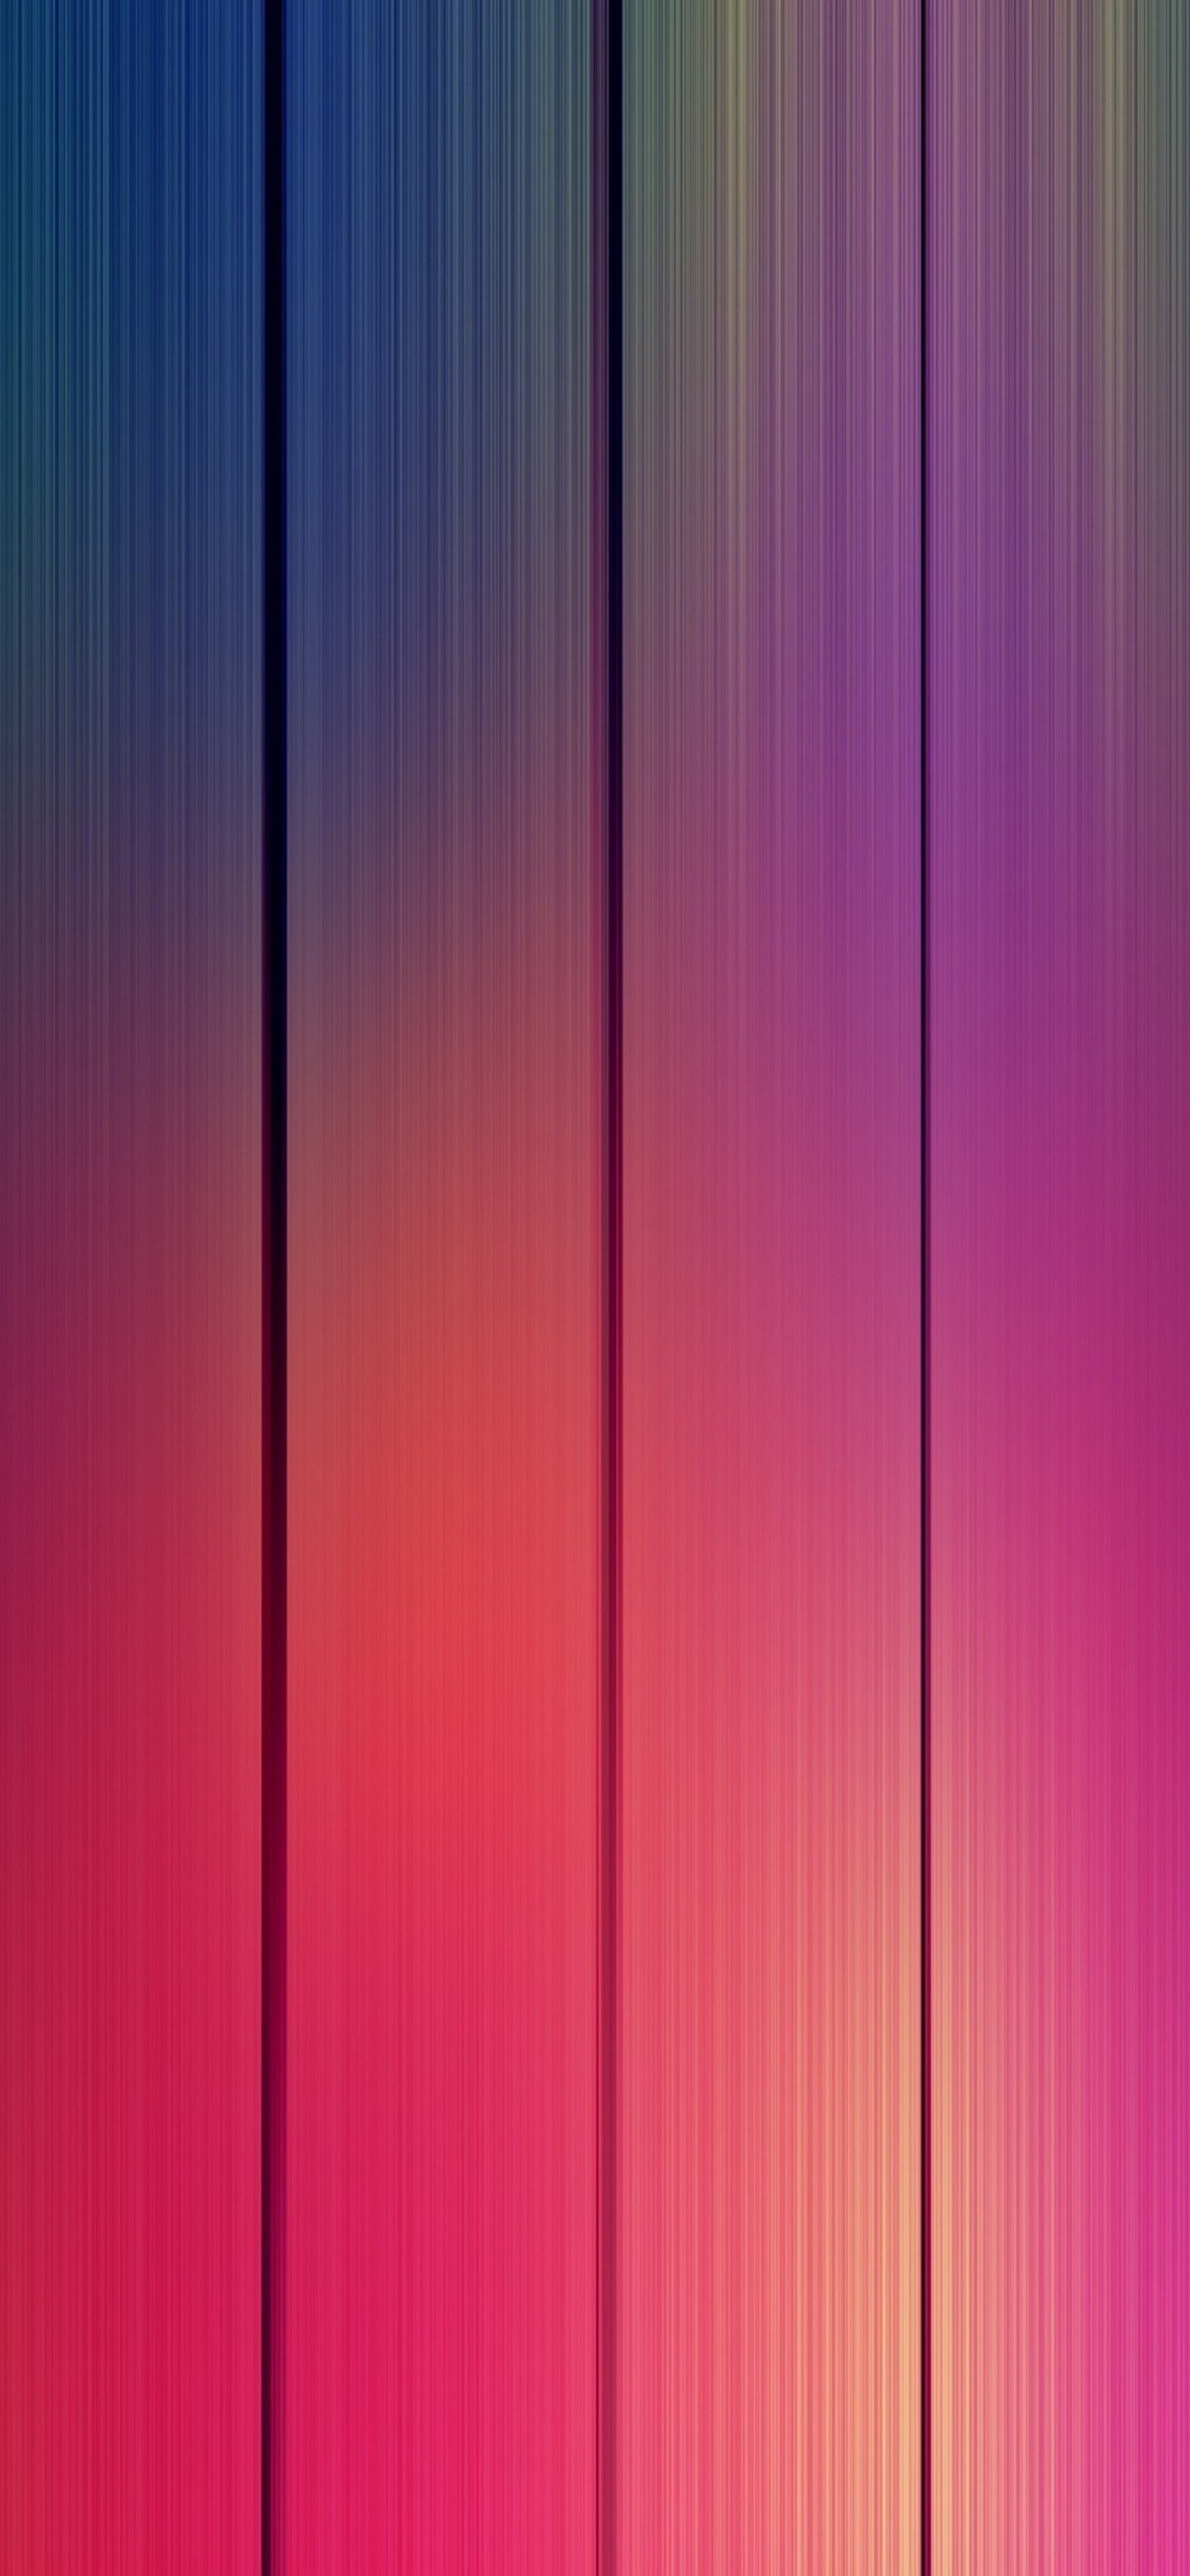 Tải bộ ảnh nền Dark Wallpapers cho iPhone XS và iPhone XS Max   Fstudiobyfptcomvn